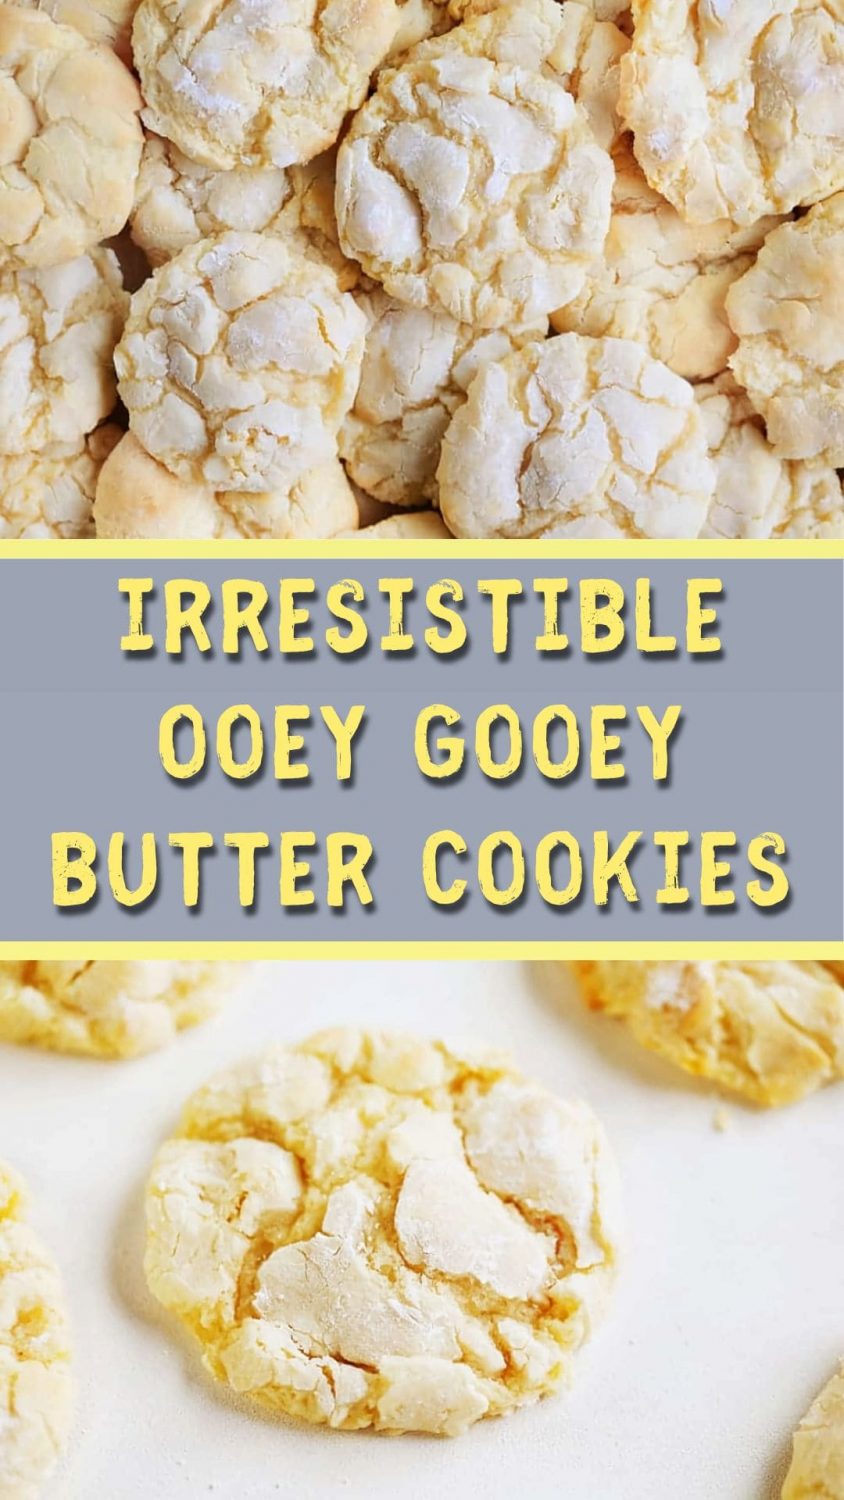 Irresistible Ooey Gooey Butter Cookies